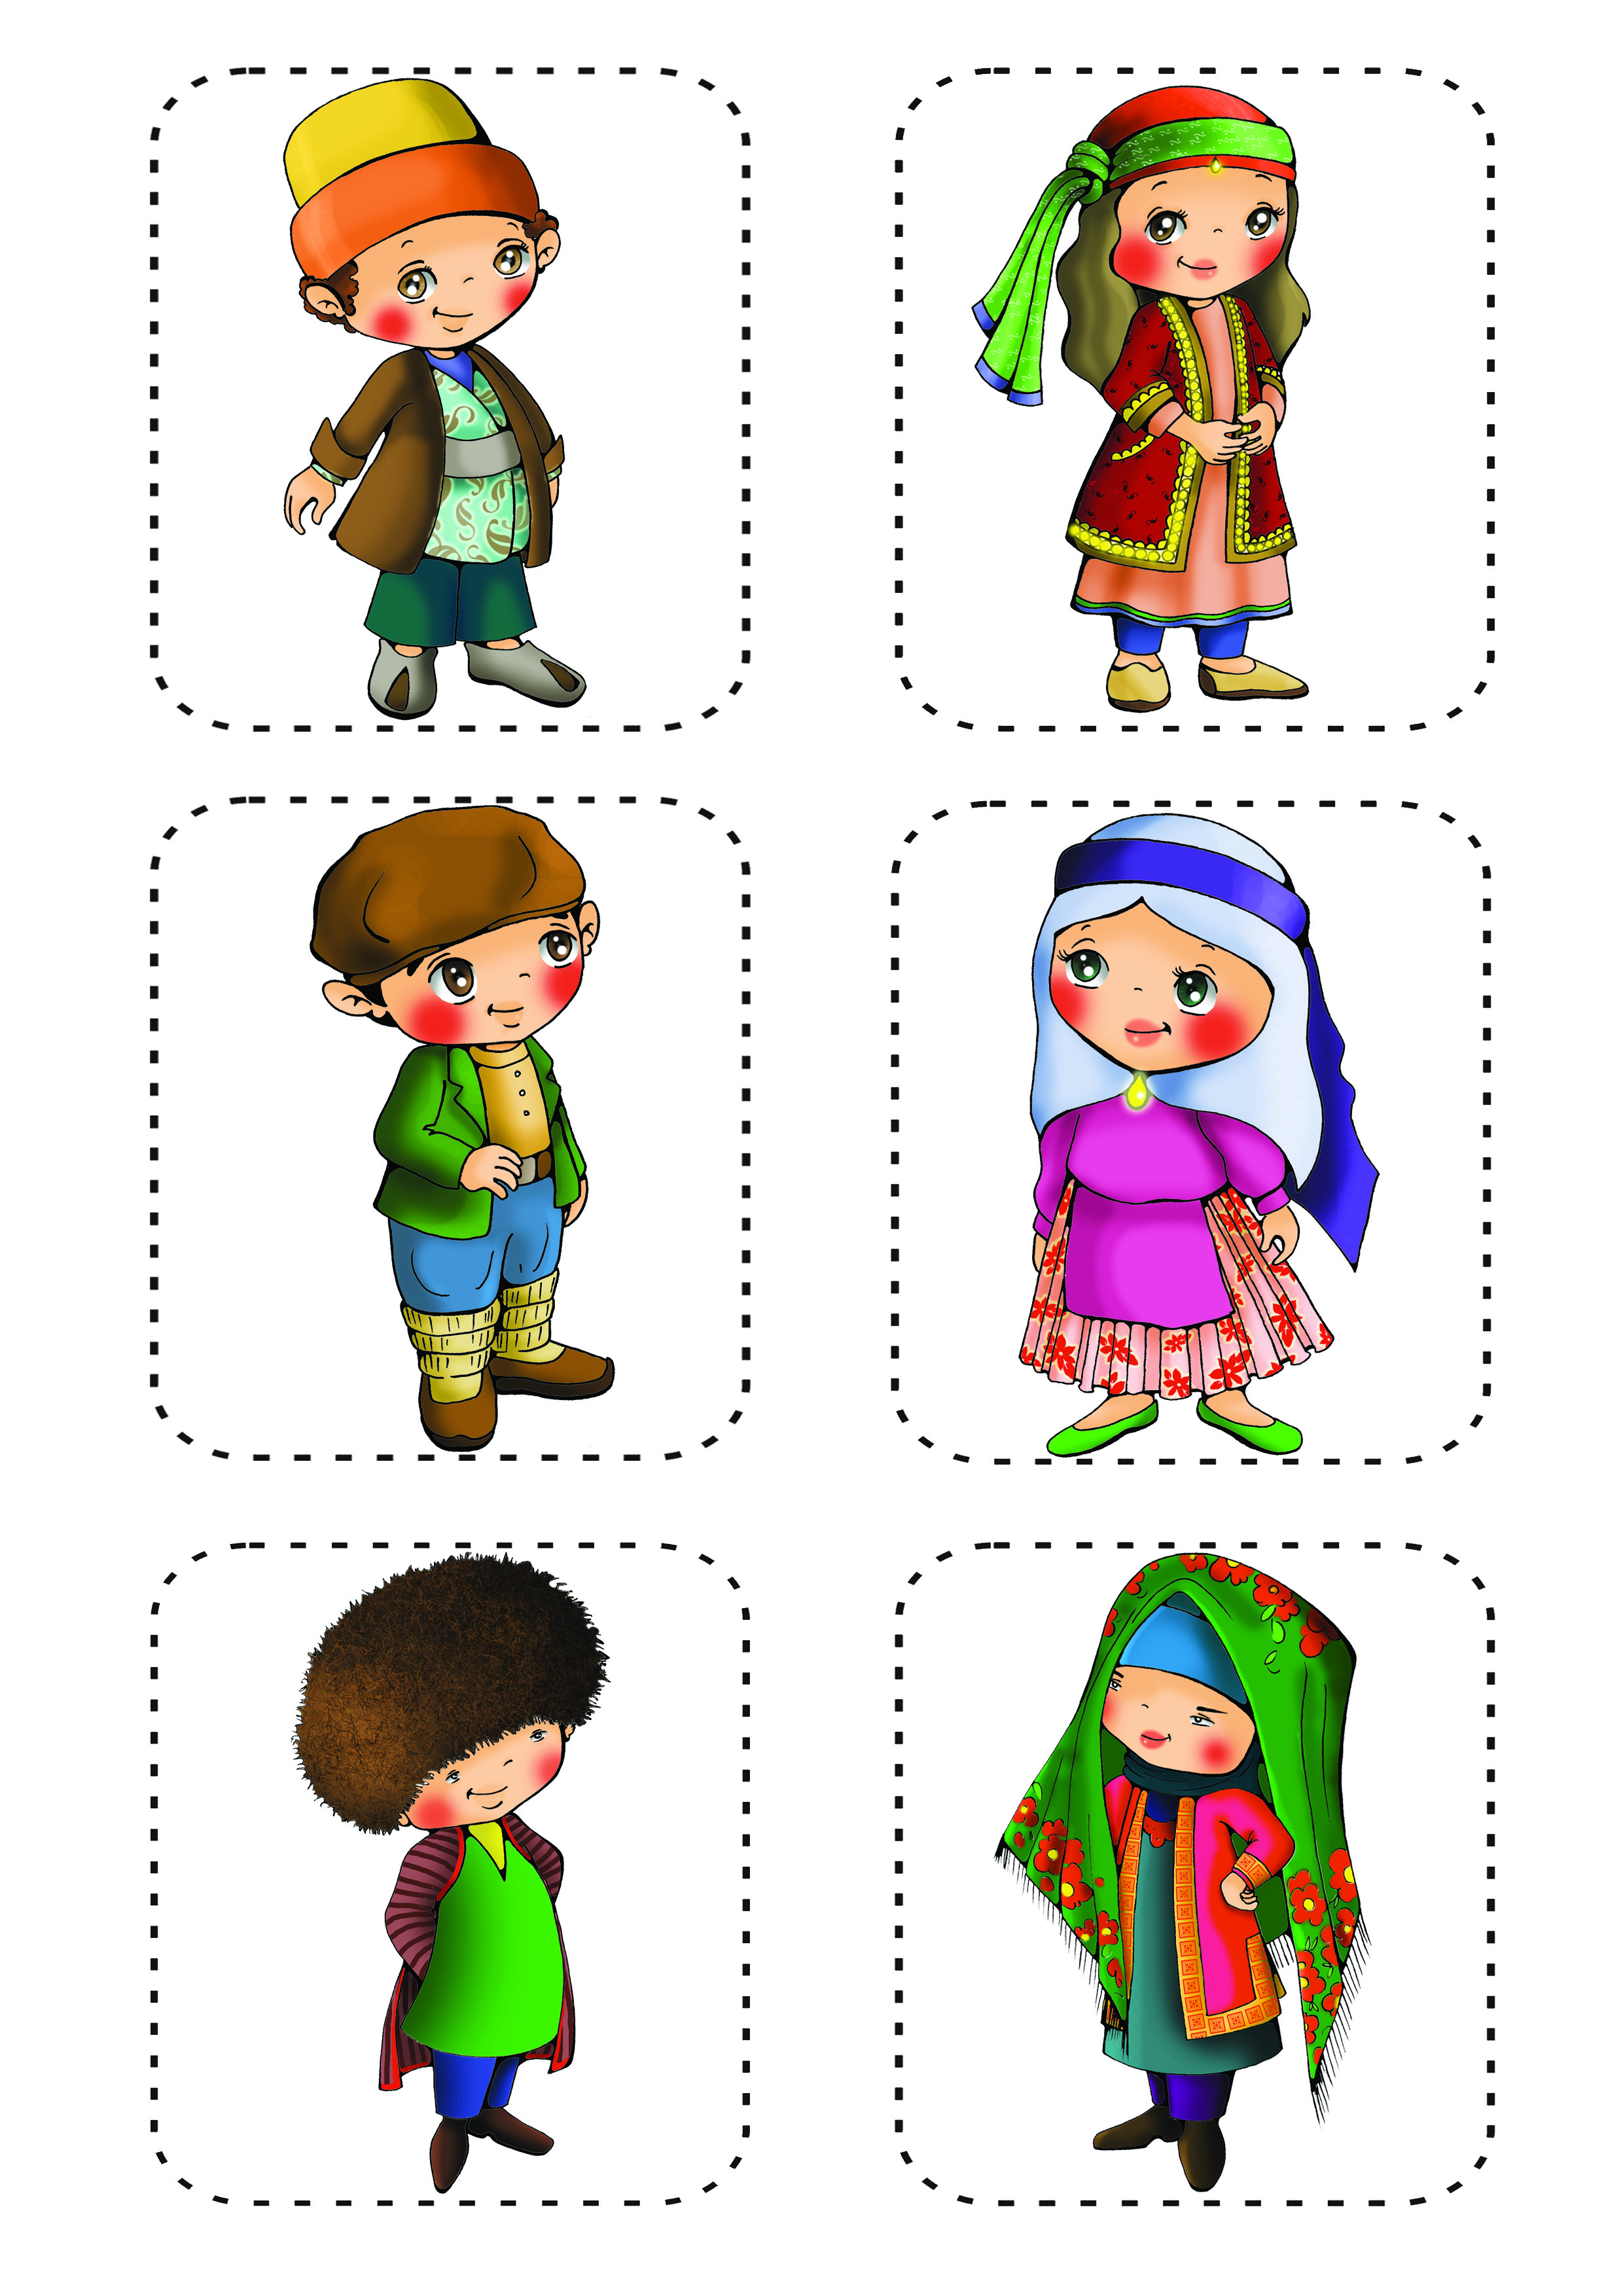 نقاشی لباس محلی اصفهان